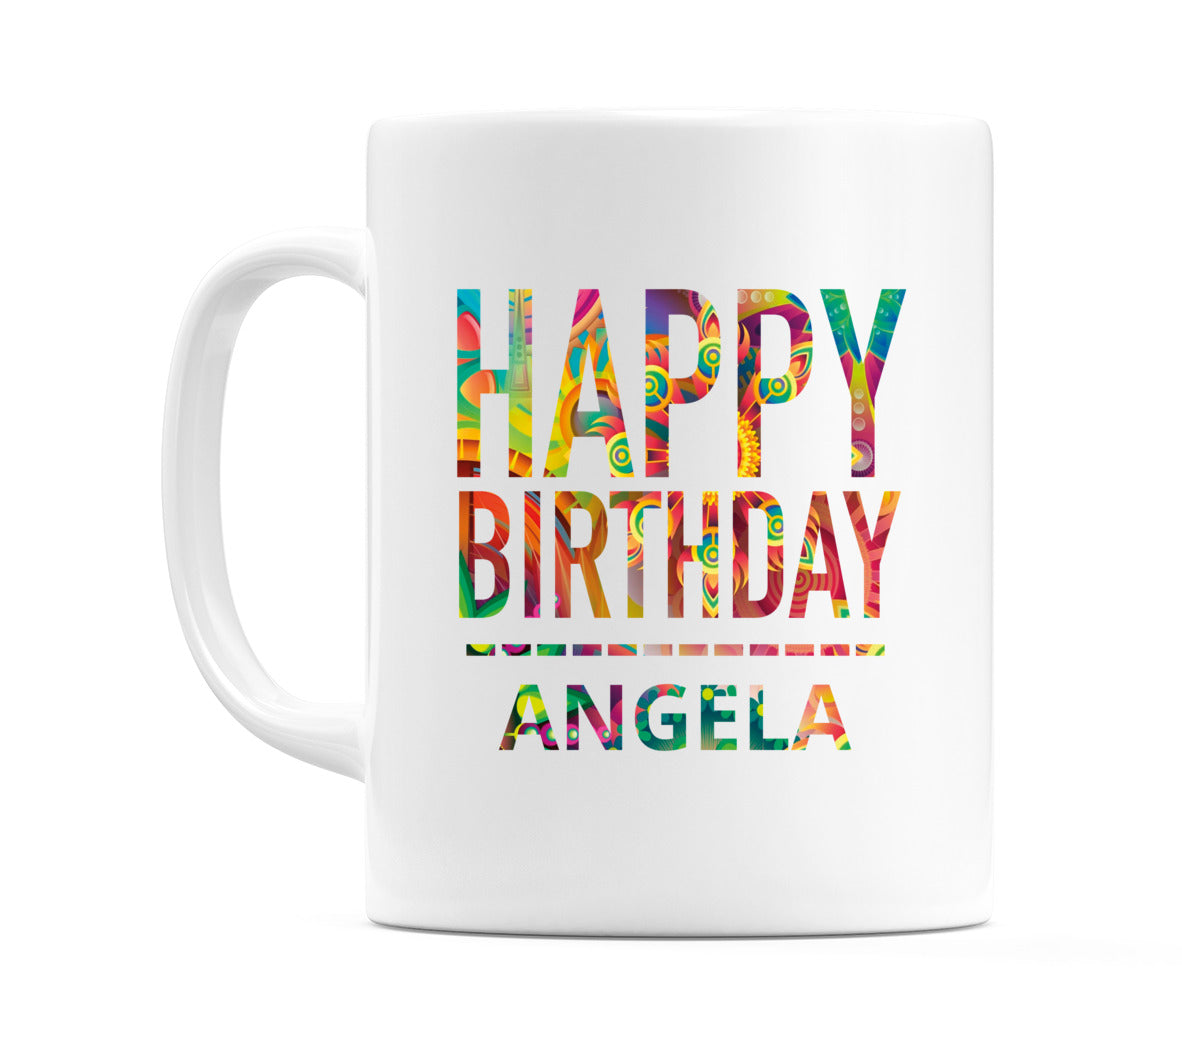 Happy Birthday Angela (Tie Dye Effect) Mug Cup by WeDoMugs